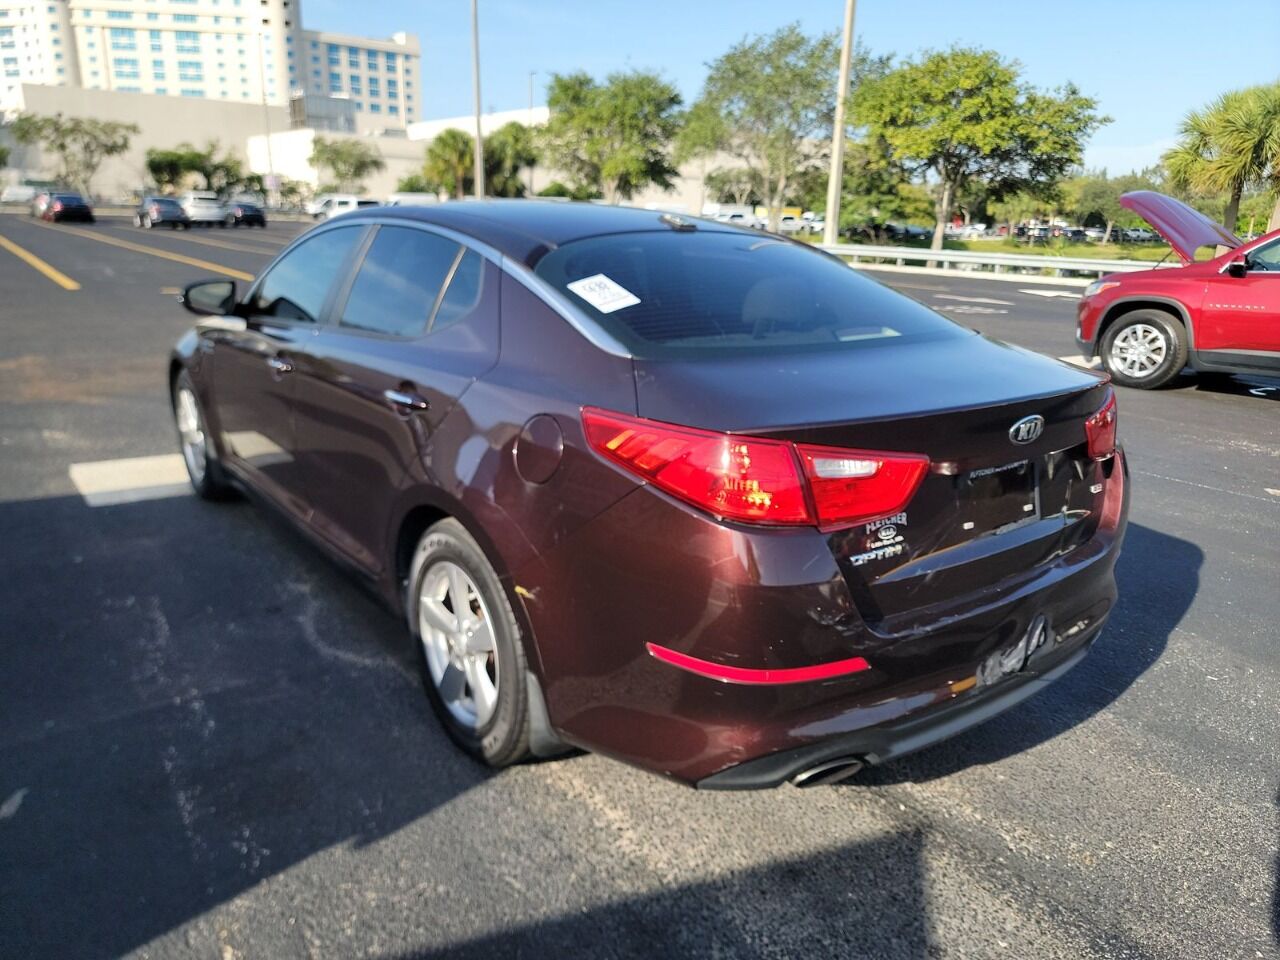 2014 KIA Optima Sedan - $6,995